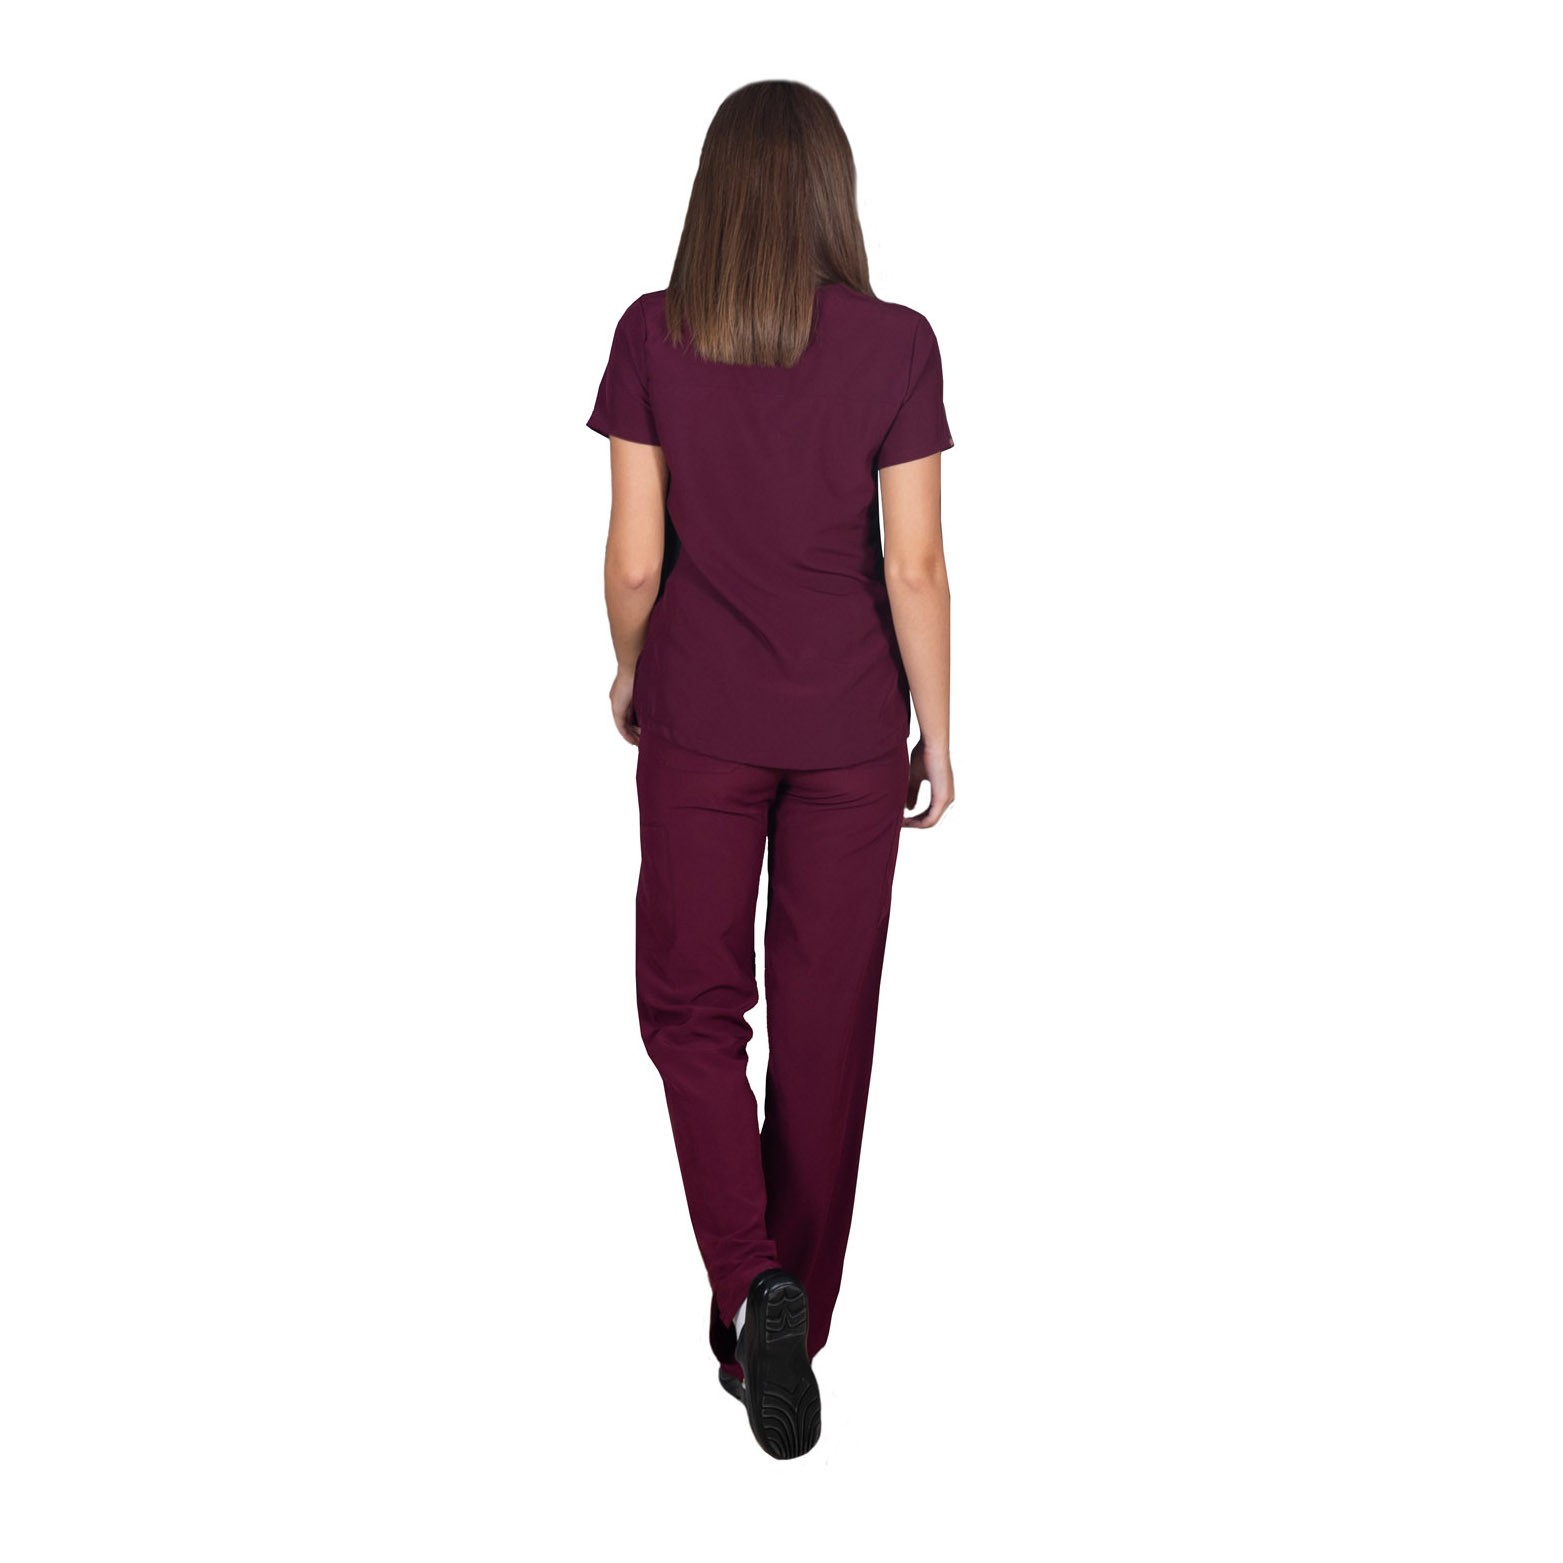 Ιατρική Στολή Γυναικεία Μπλούζα - Παντελόνι (Σετ) Stretch Μπορντώ